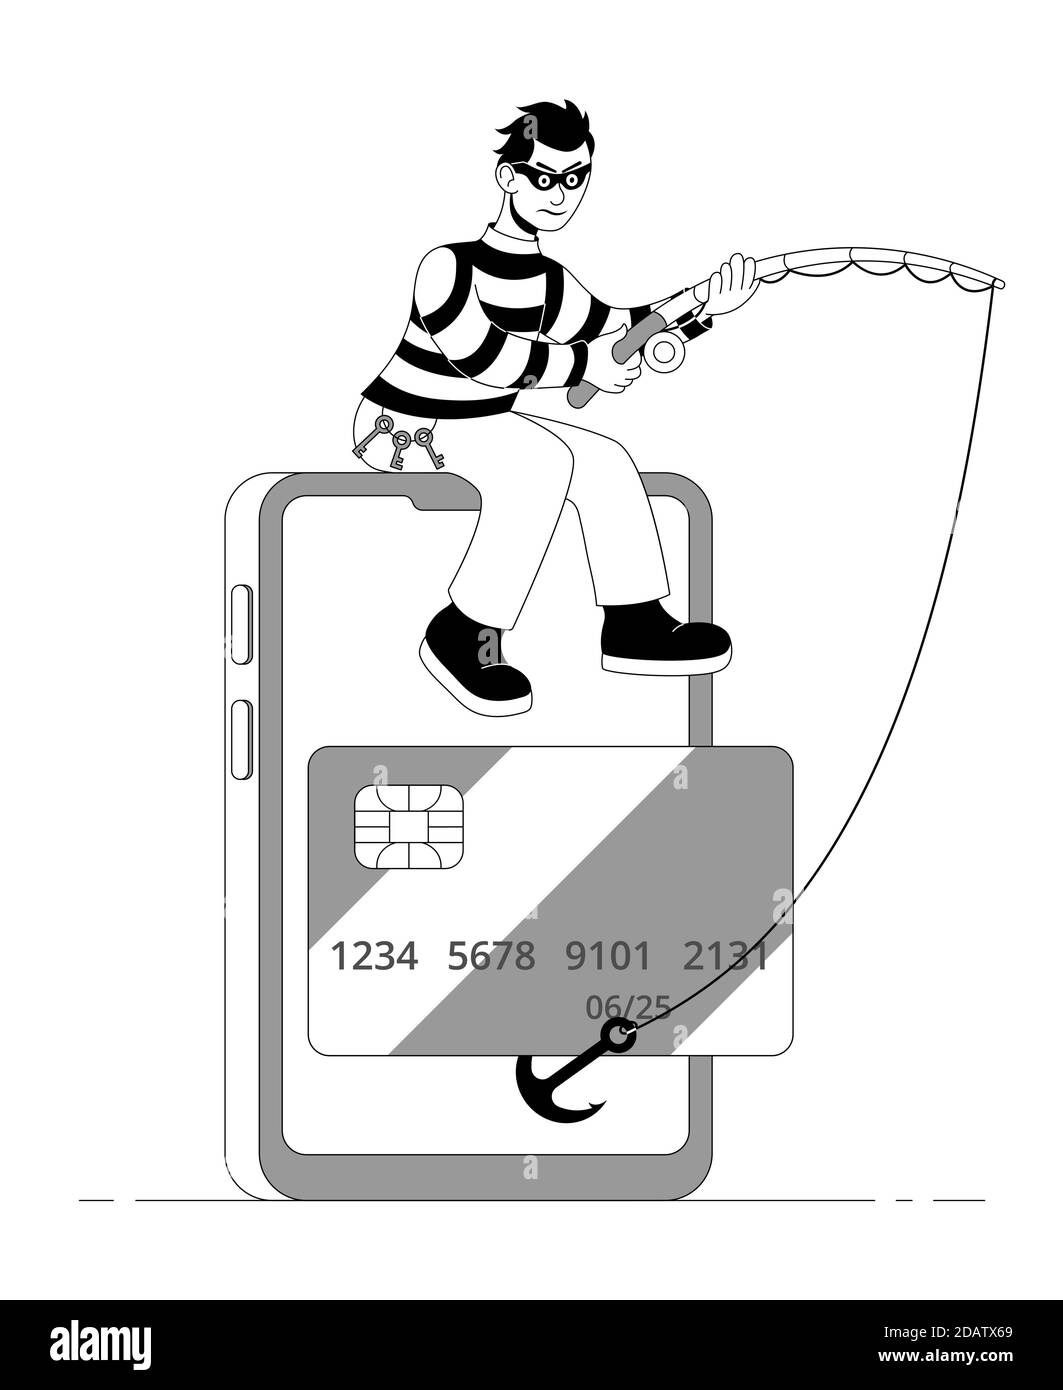 Maskierter Räuber mit einem Fischritt stehlen Kreditkarte von einem Smartphone. Cartoon flache Vektor-Illustration. Stock Vektor